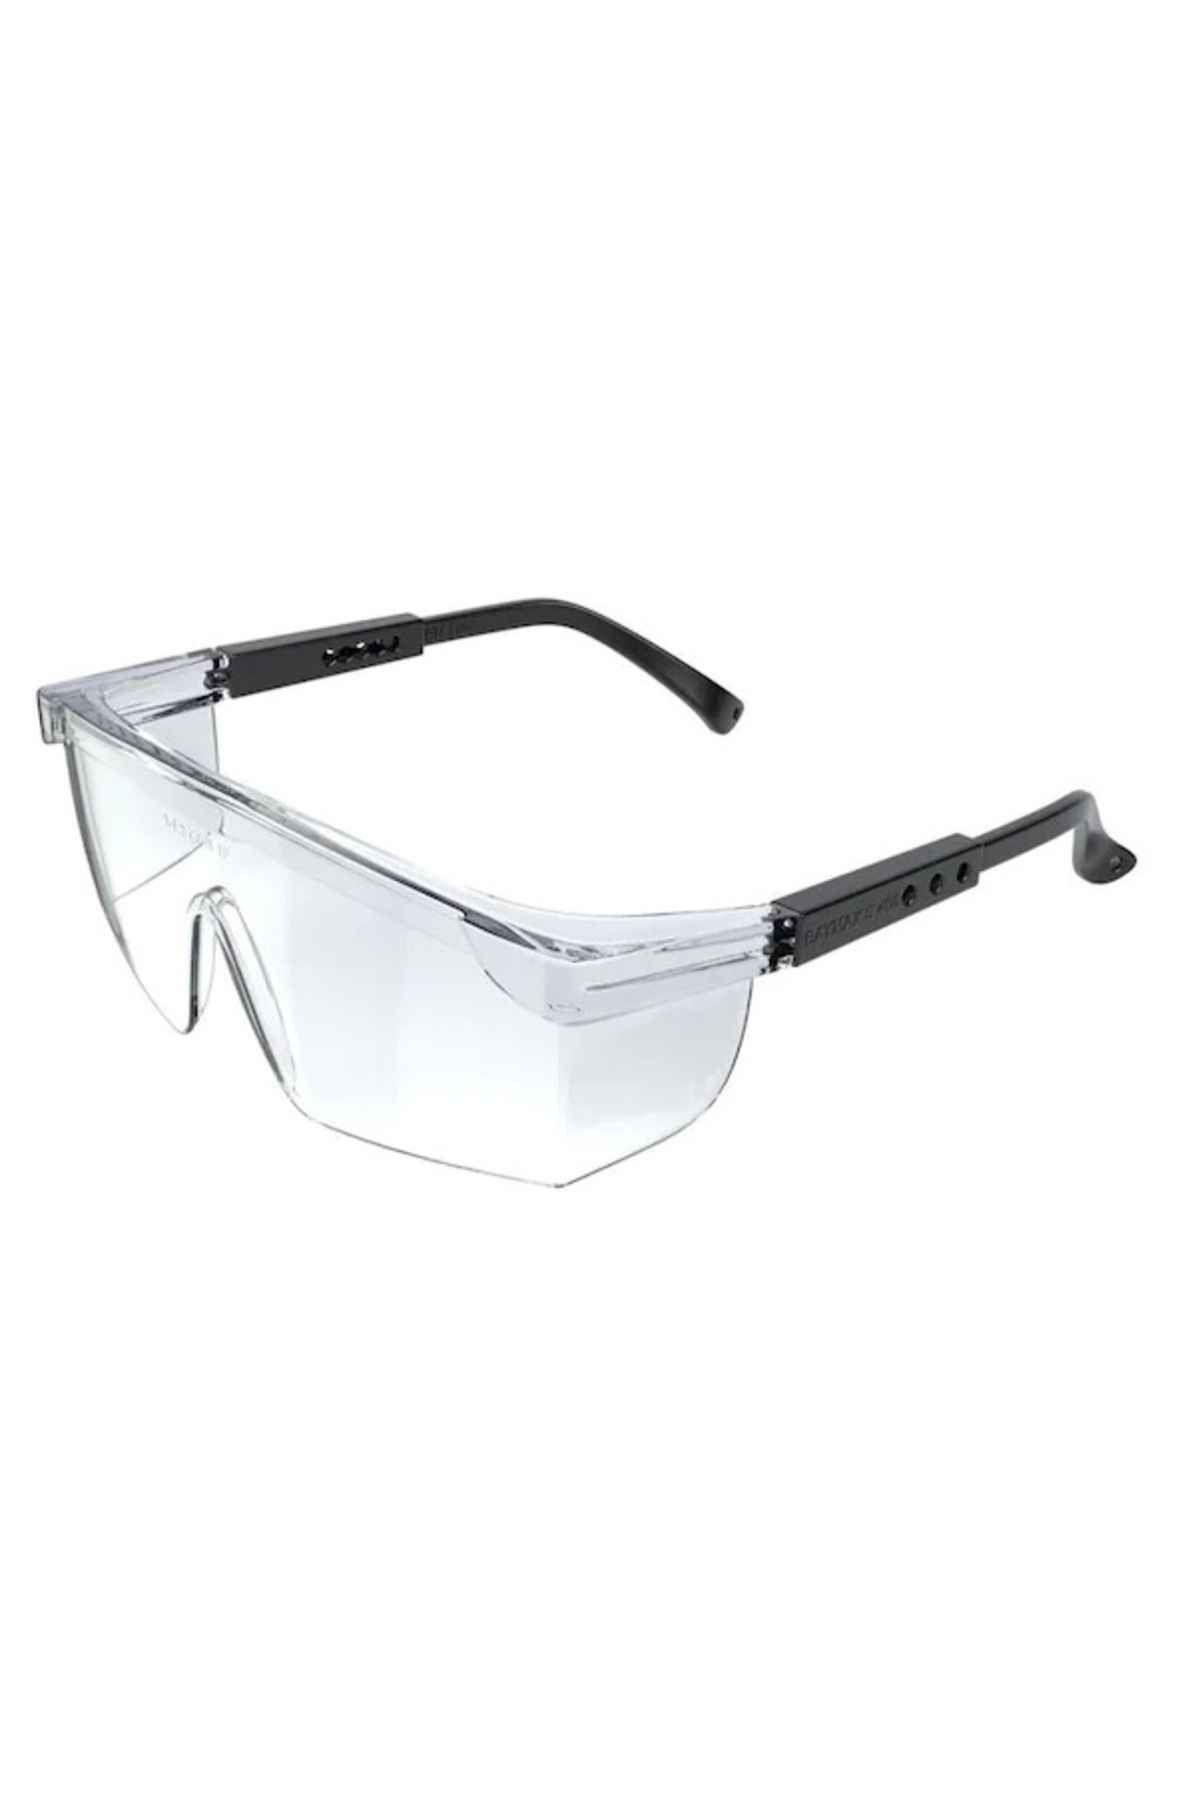 Go İthalat Korumalı Laboratuvar Gözlüğü Şeffaf Ayarlanır İş güvenlik Gözlüğü CE Sertifikalı (4199)